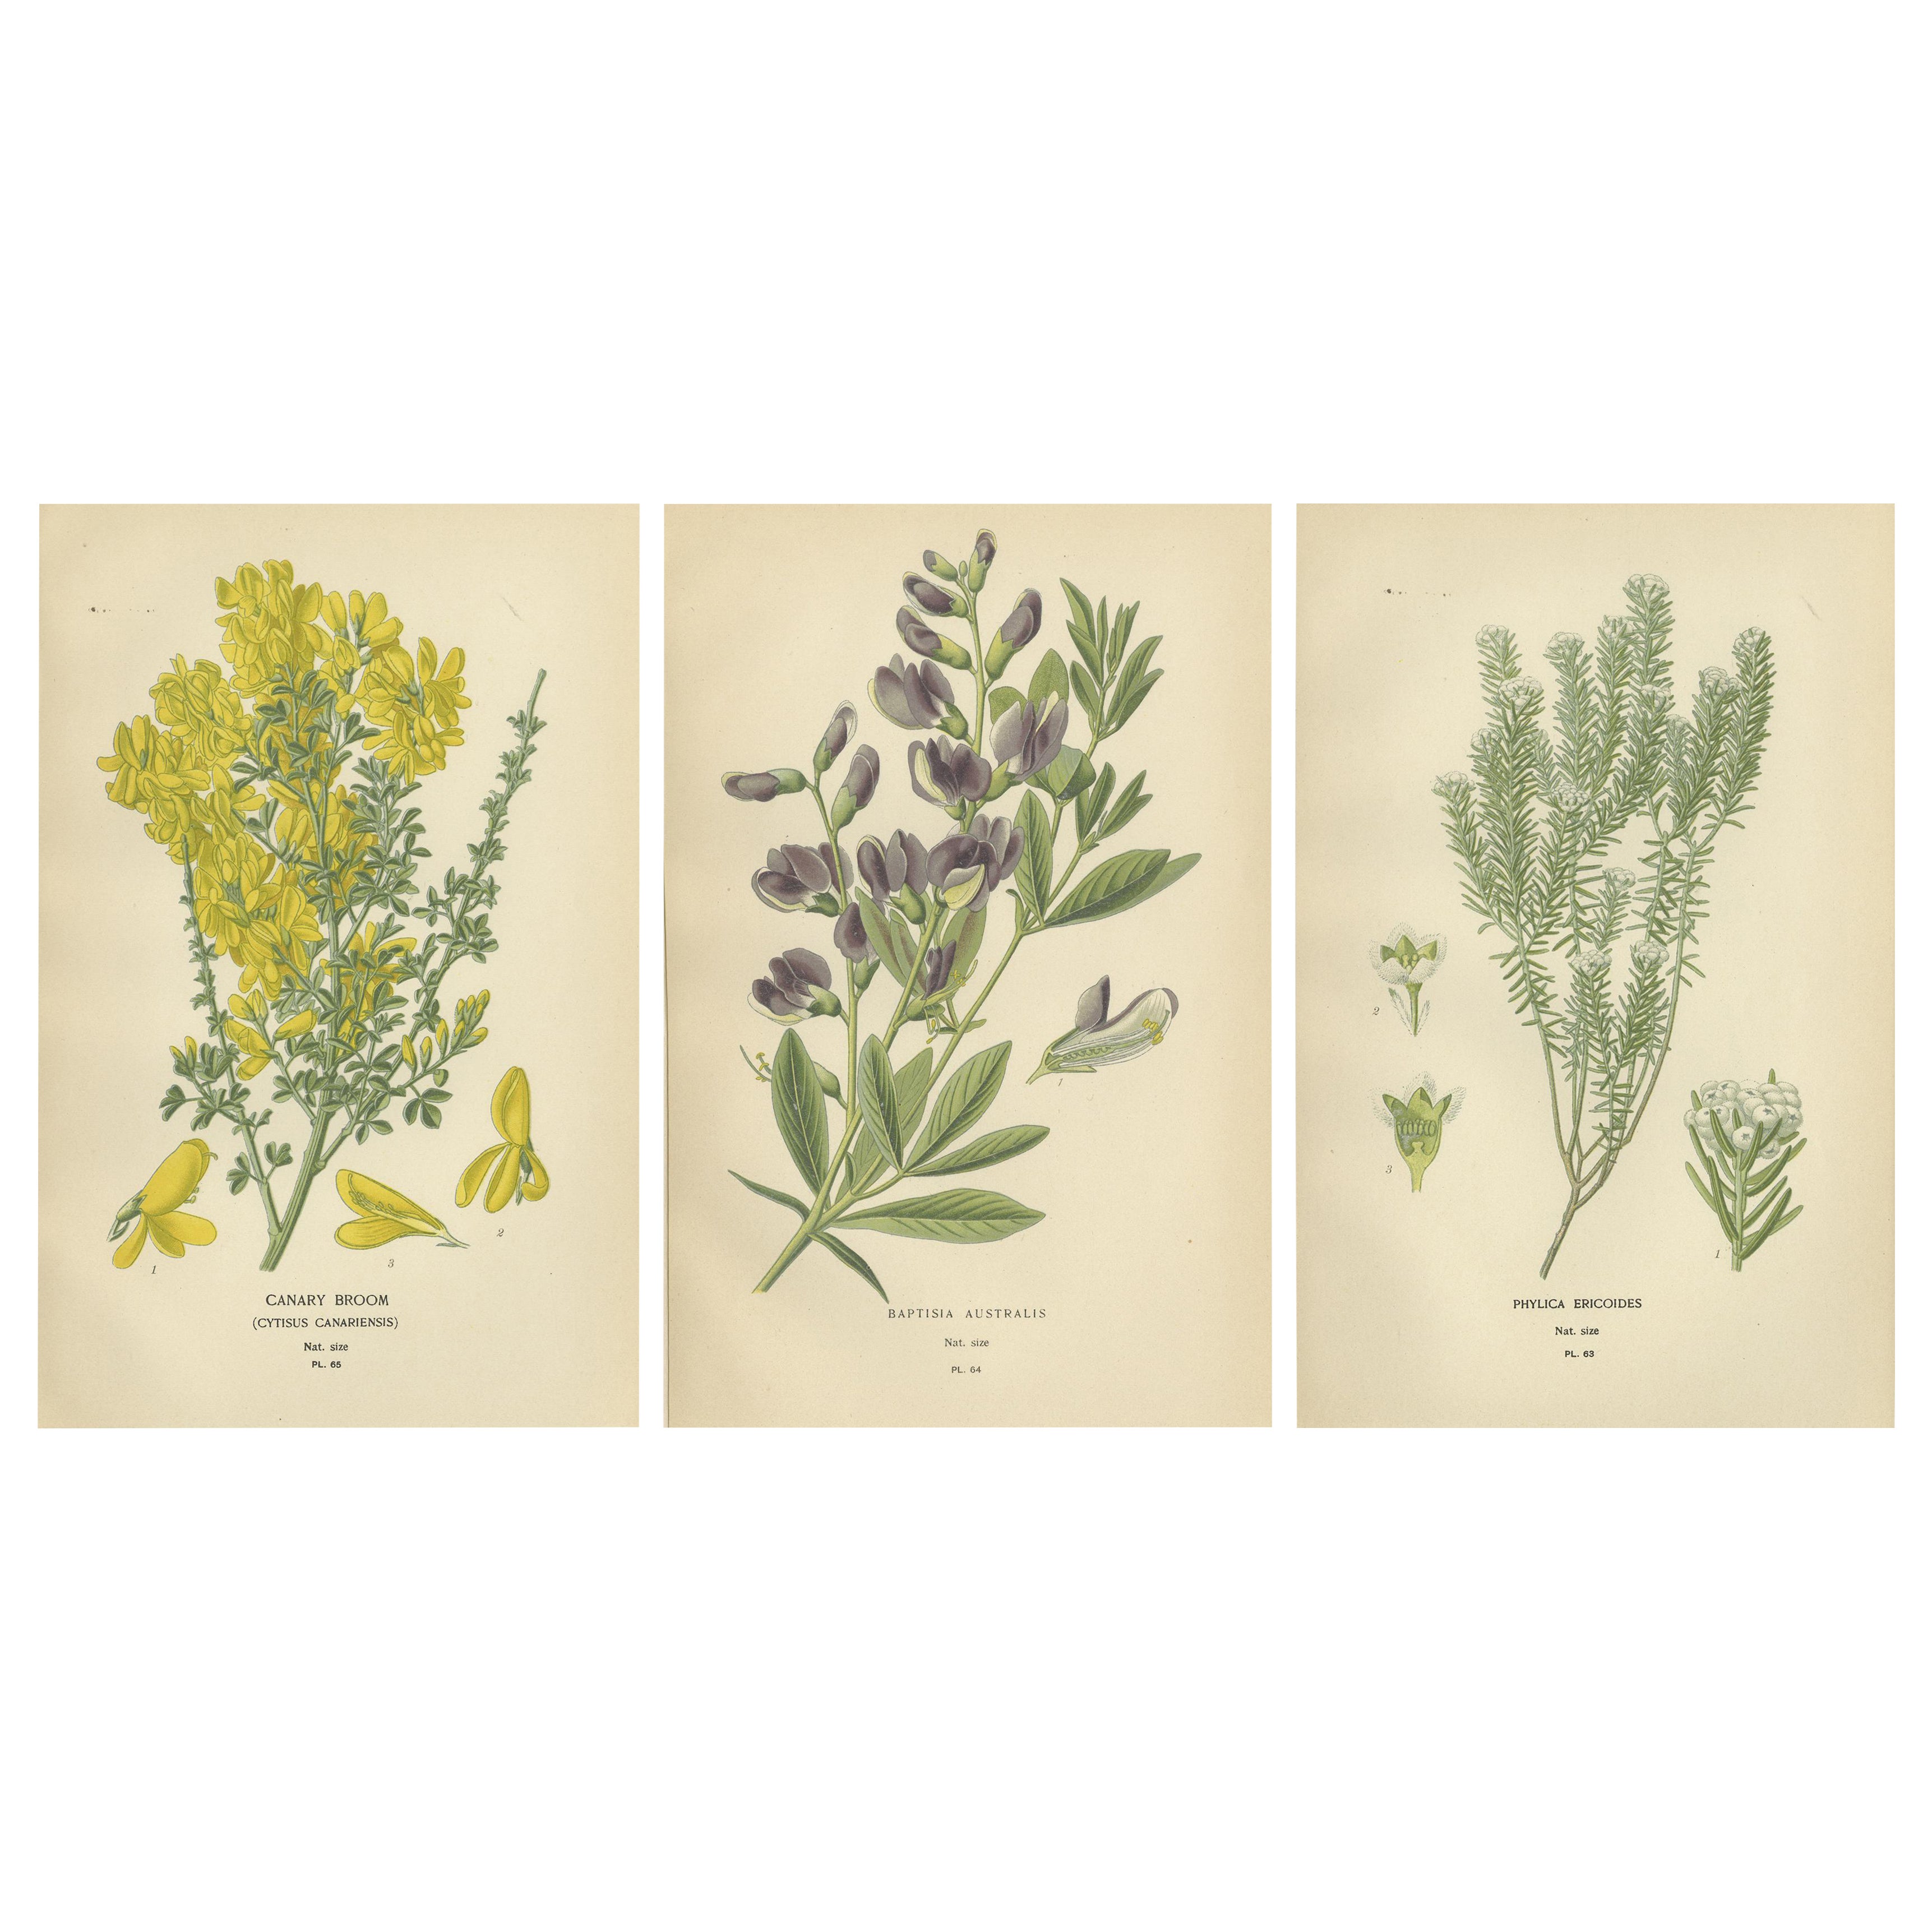 Blossoms of Elegance: Ein Triptychon der botanischen Kunst von 1896